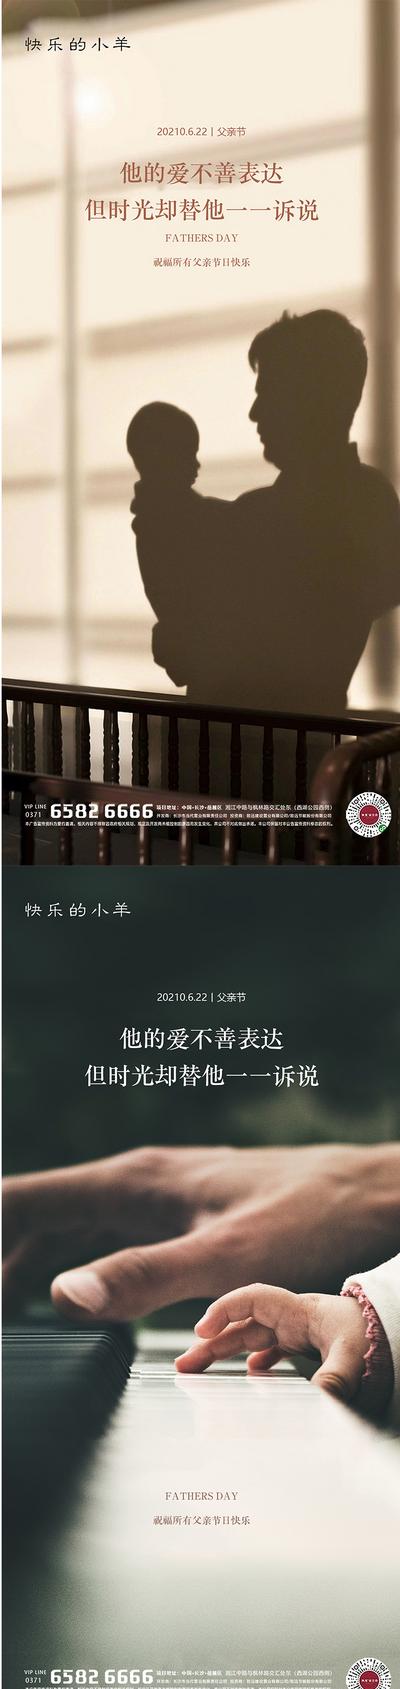 南门网 海报 房地产 公历节日 父亲节 剪影 温馨